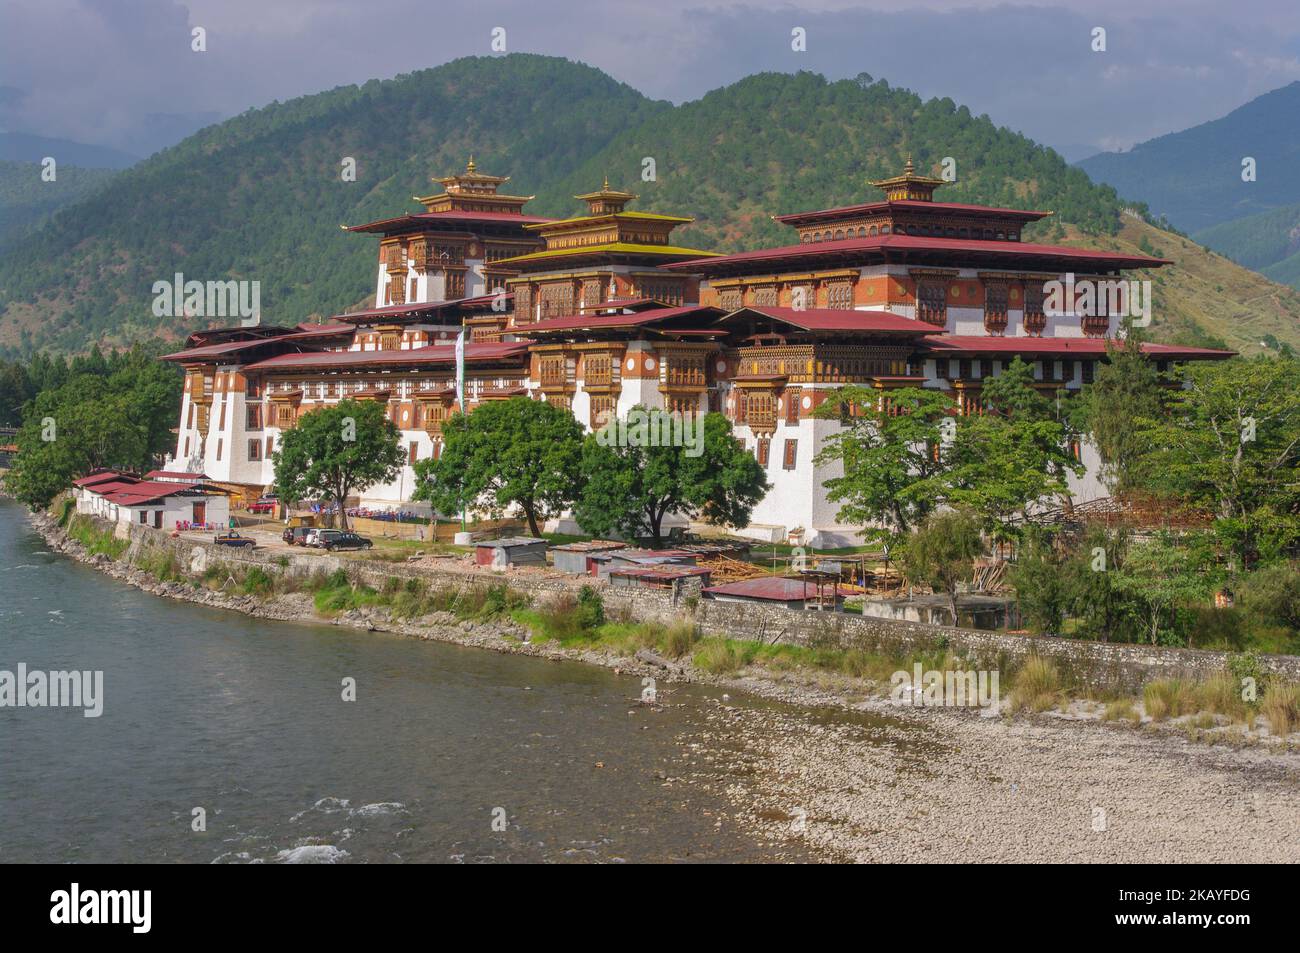 Landschaftlich reizvoller Blick auf das historische Wahrzeichen Punakha dzong am Ufer des Flusses Mo Chhu, Westbhutan Stockfoto